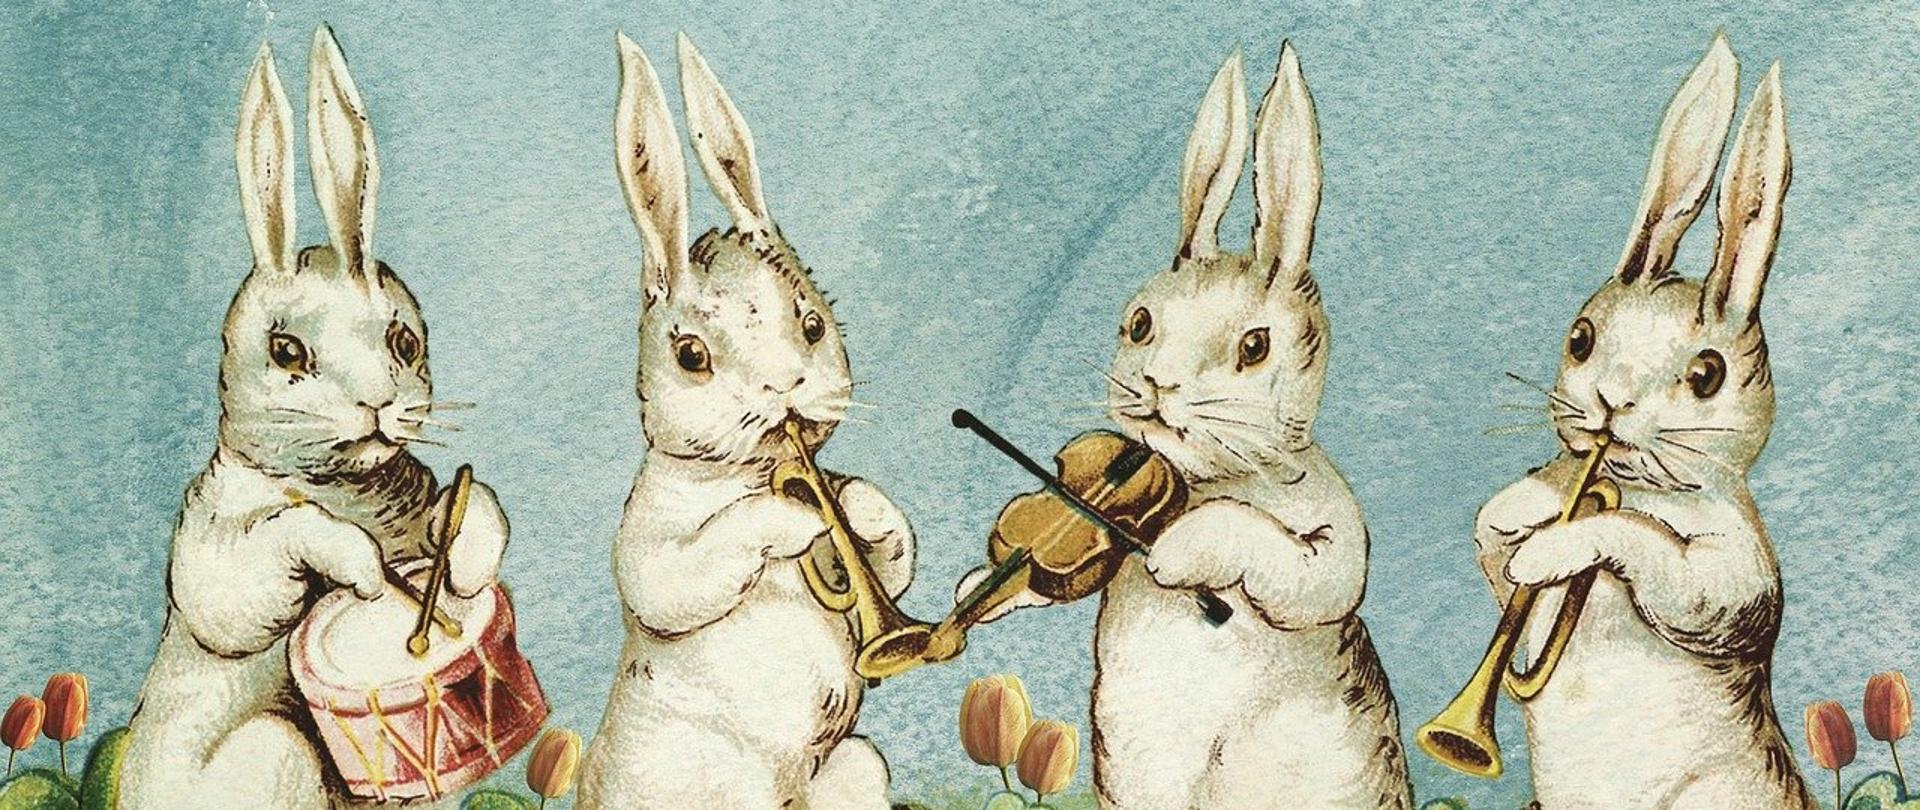 Wielkanocne zajączki grające na instrumentach.